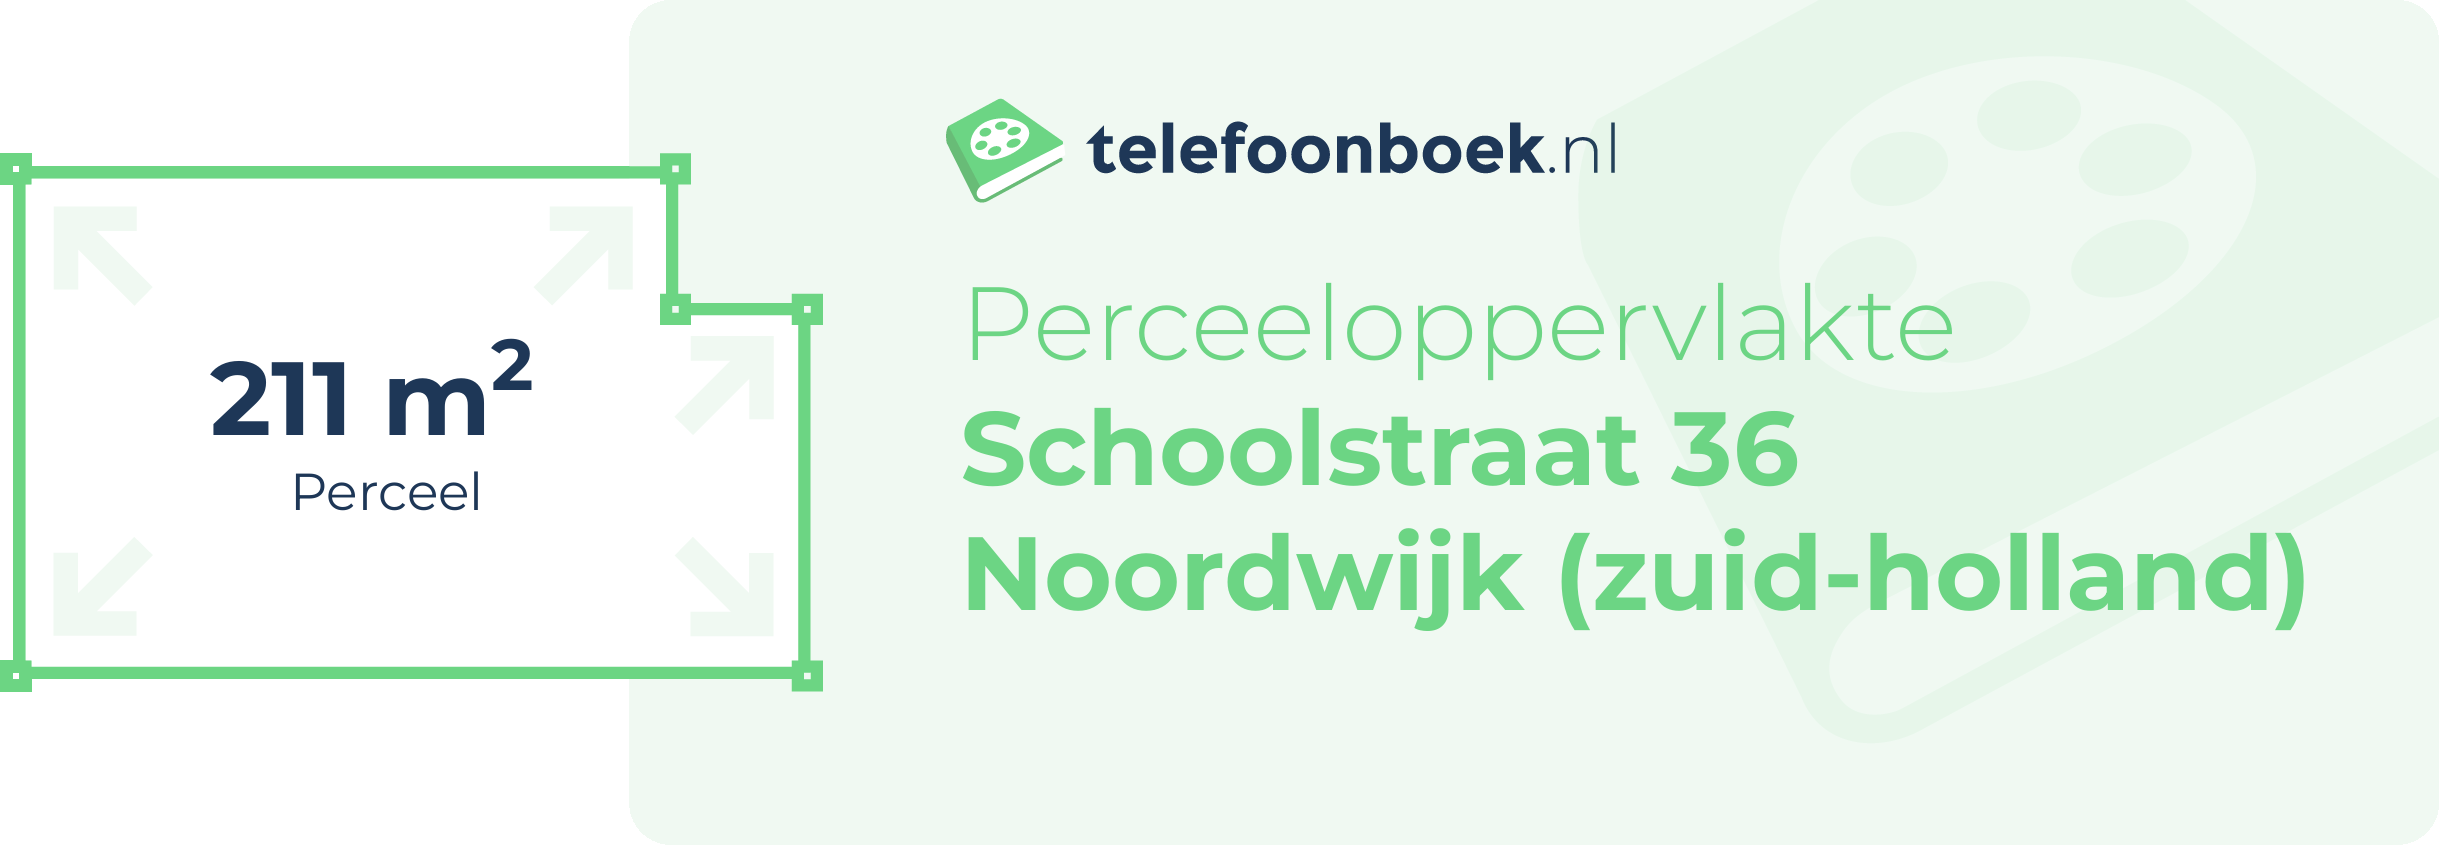 Perceeloppervlakte Schoolstraat 36 Noordwijk (Zuid-Holland)